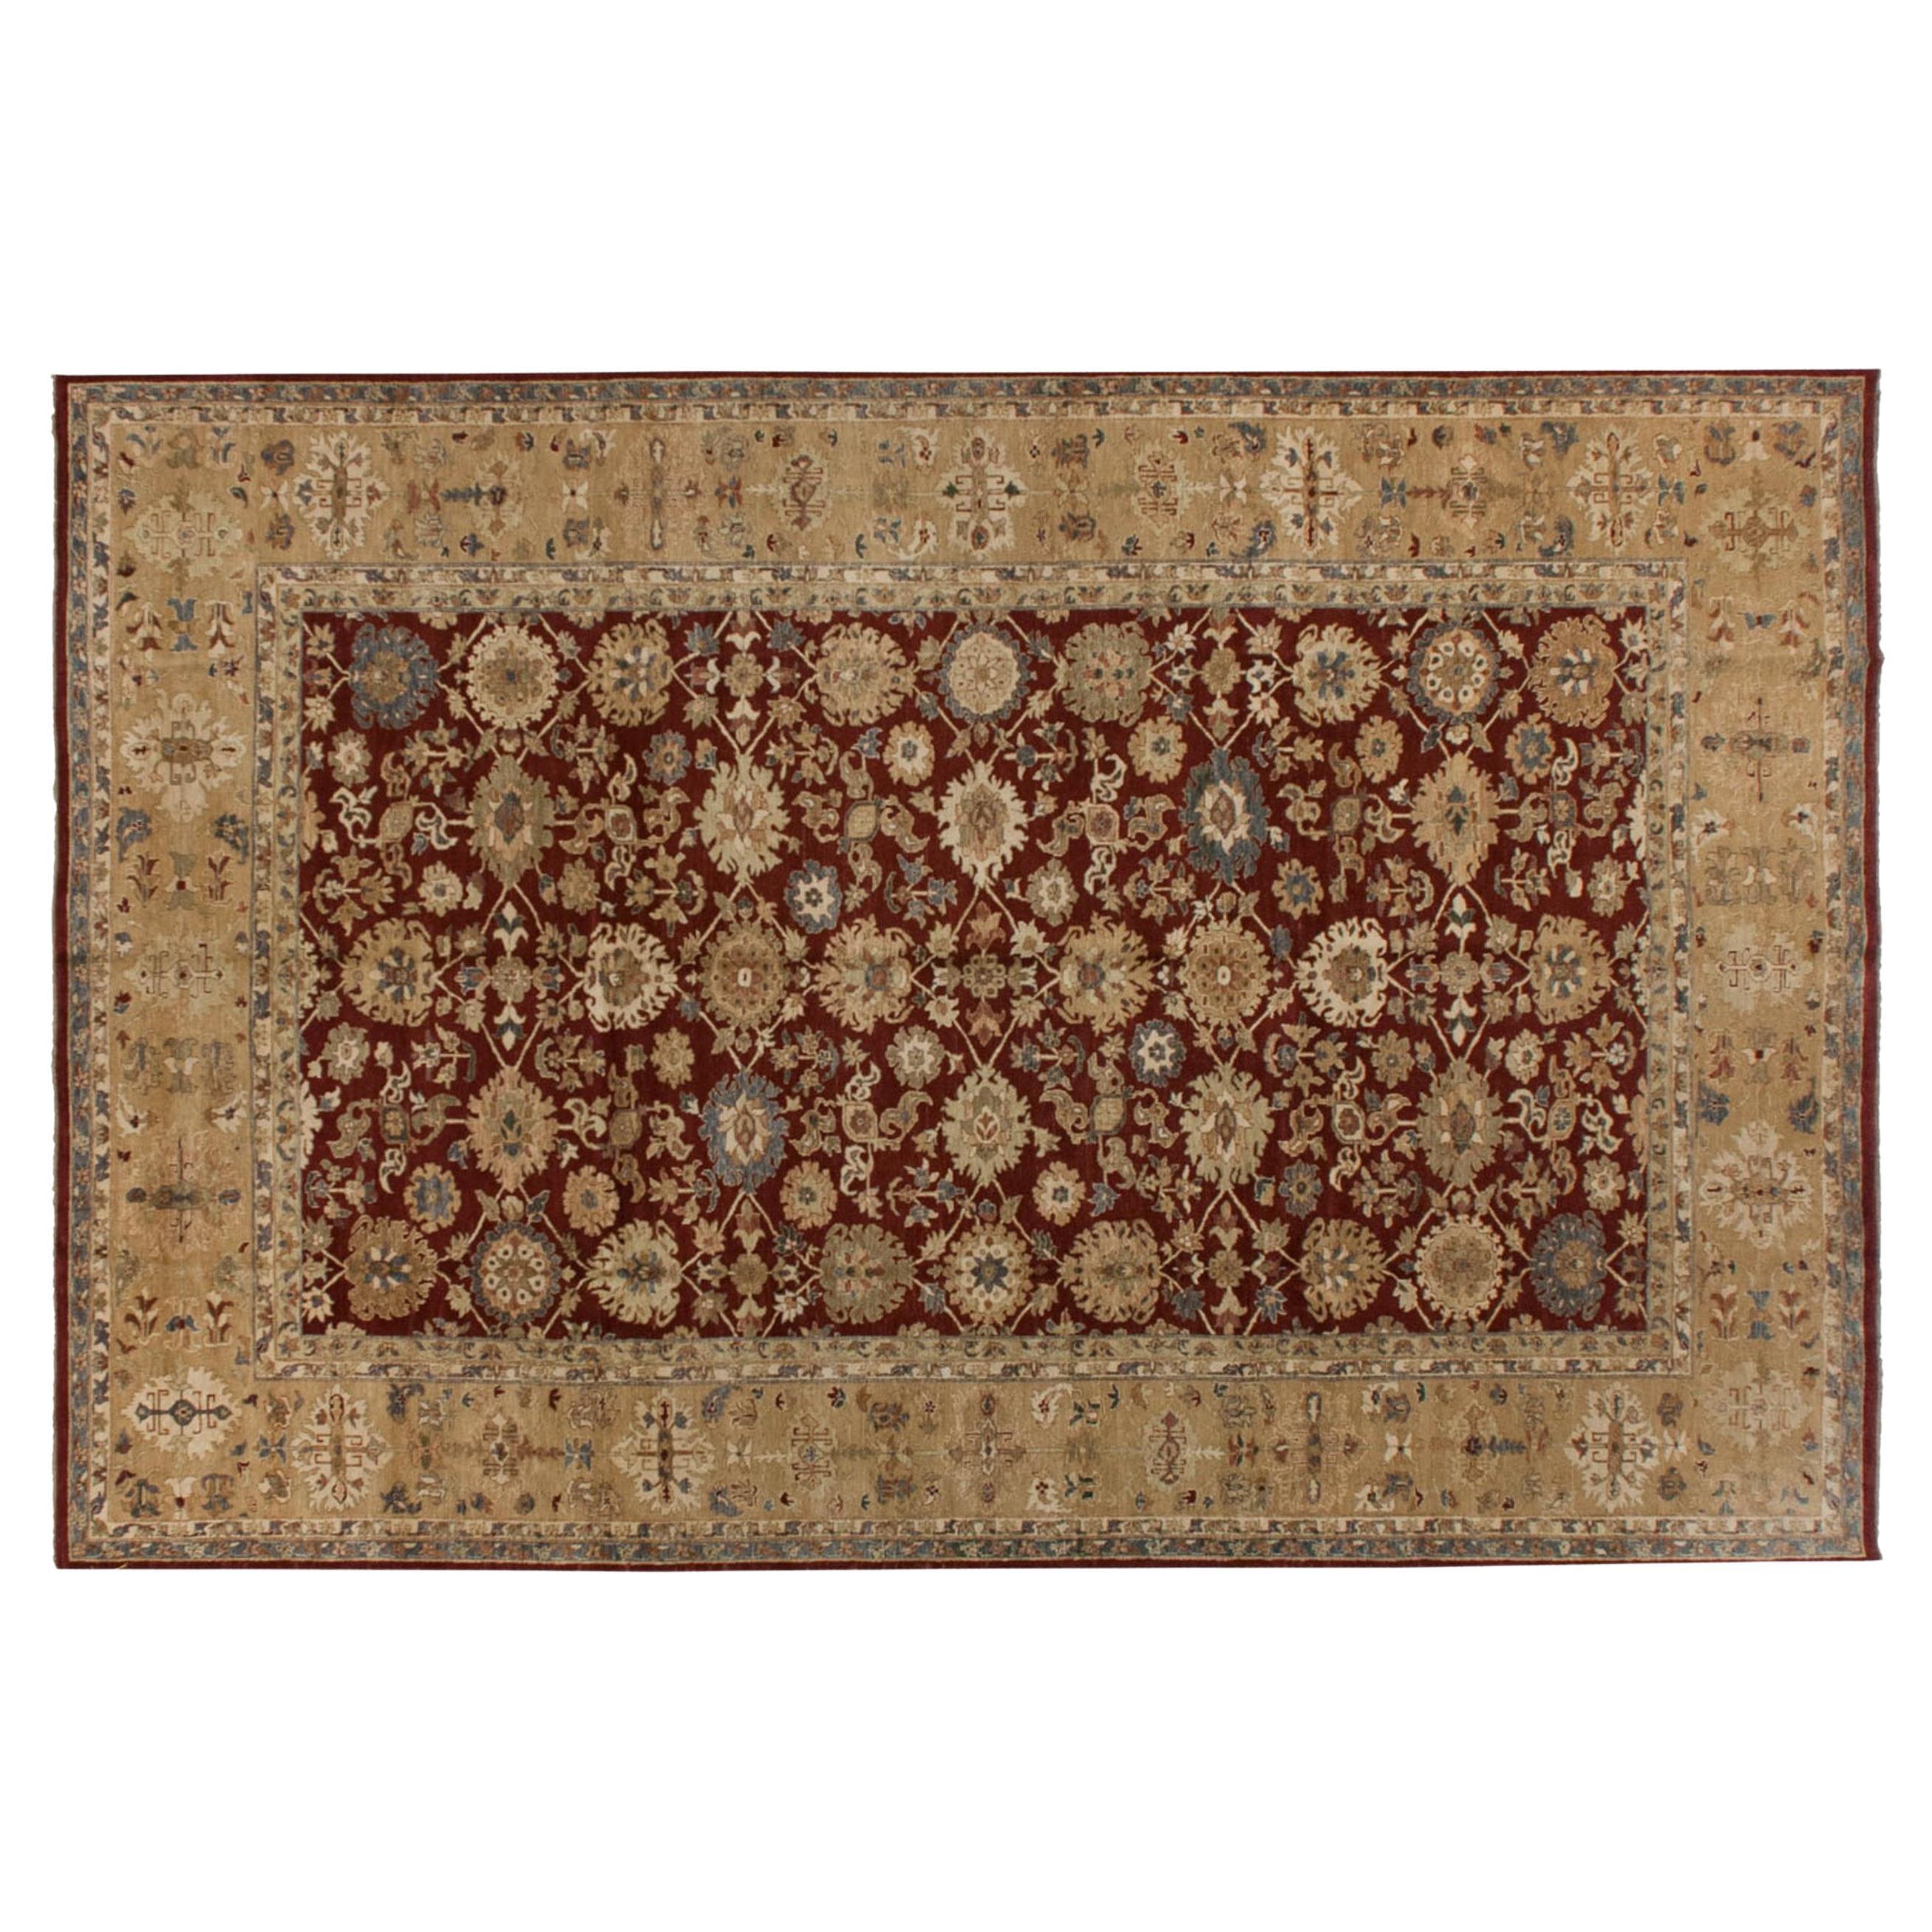 Agra-Teppich, neu lackiert